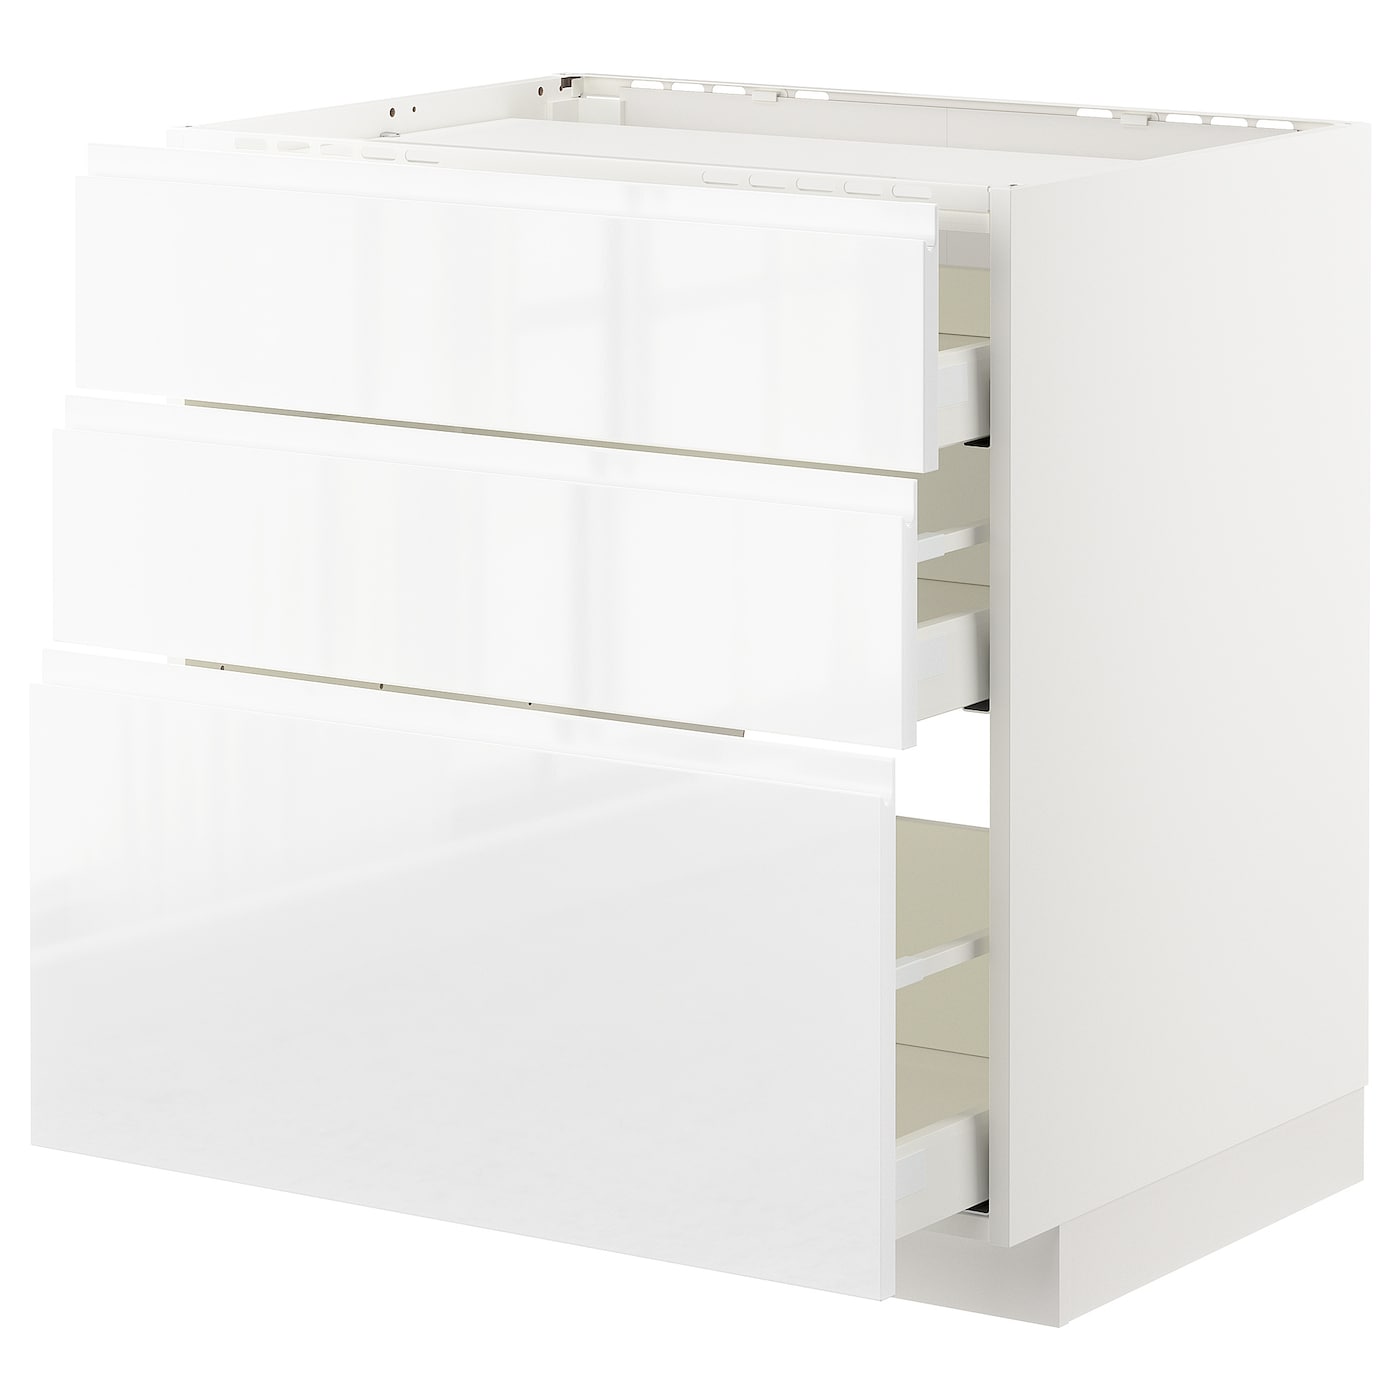 Напольный шкаф  - IKEA METOD MAXIMERA, 88x62,1x80см, белый, МЕТОД МАКСИМЕРА ИКЕА